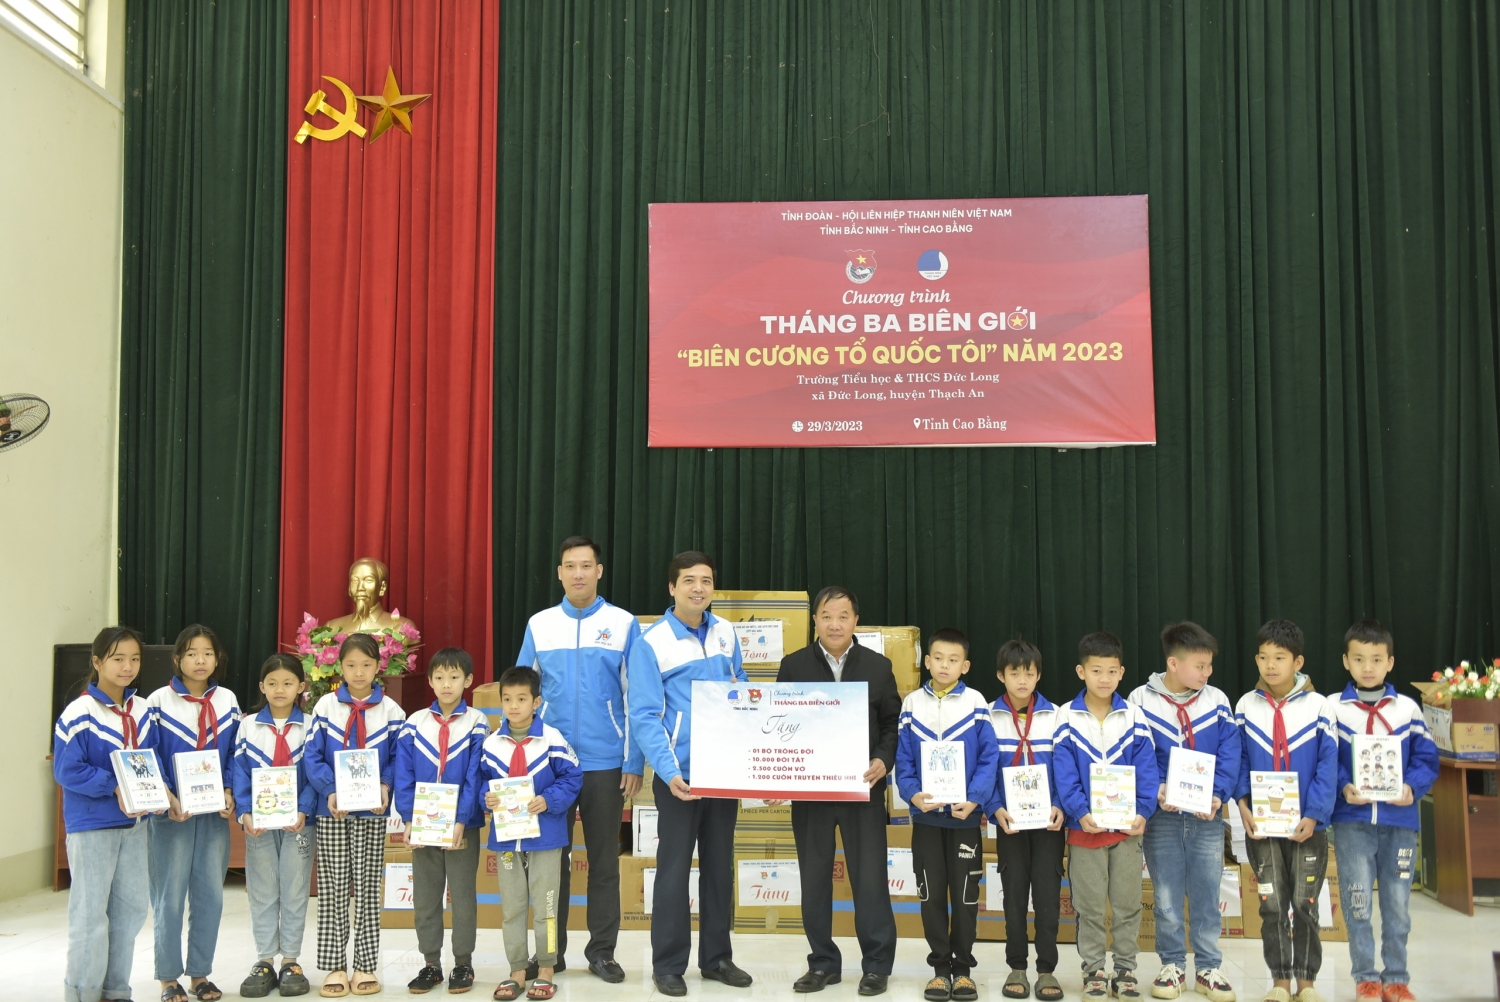 Đoàn công tác trao tặng các phần quà cho Trường Tiểu học và THCS Đức Long